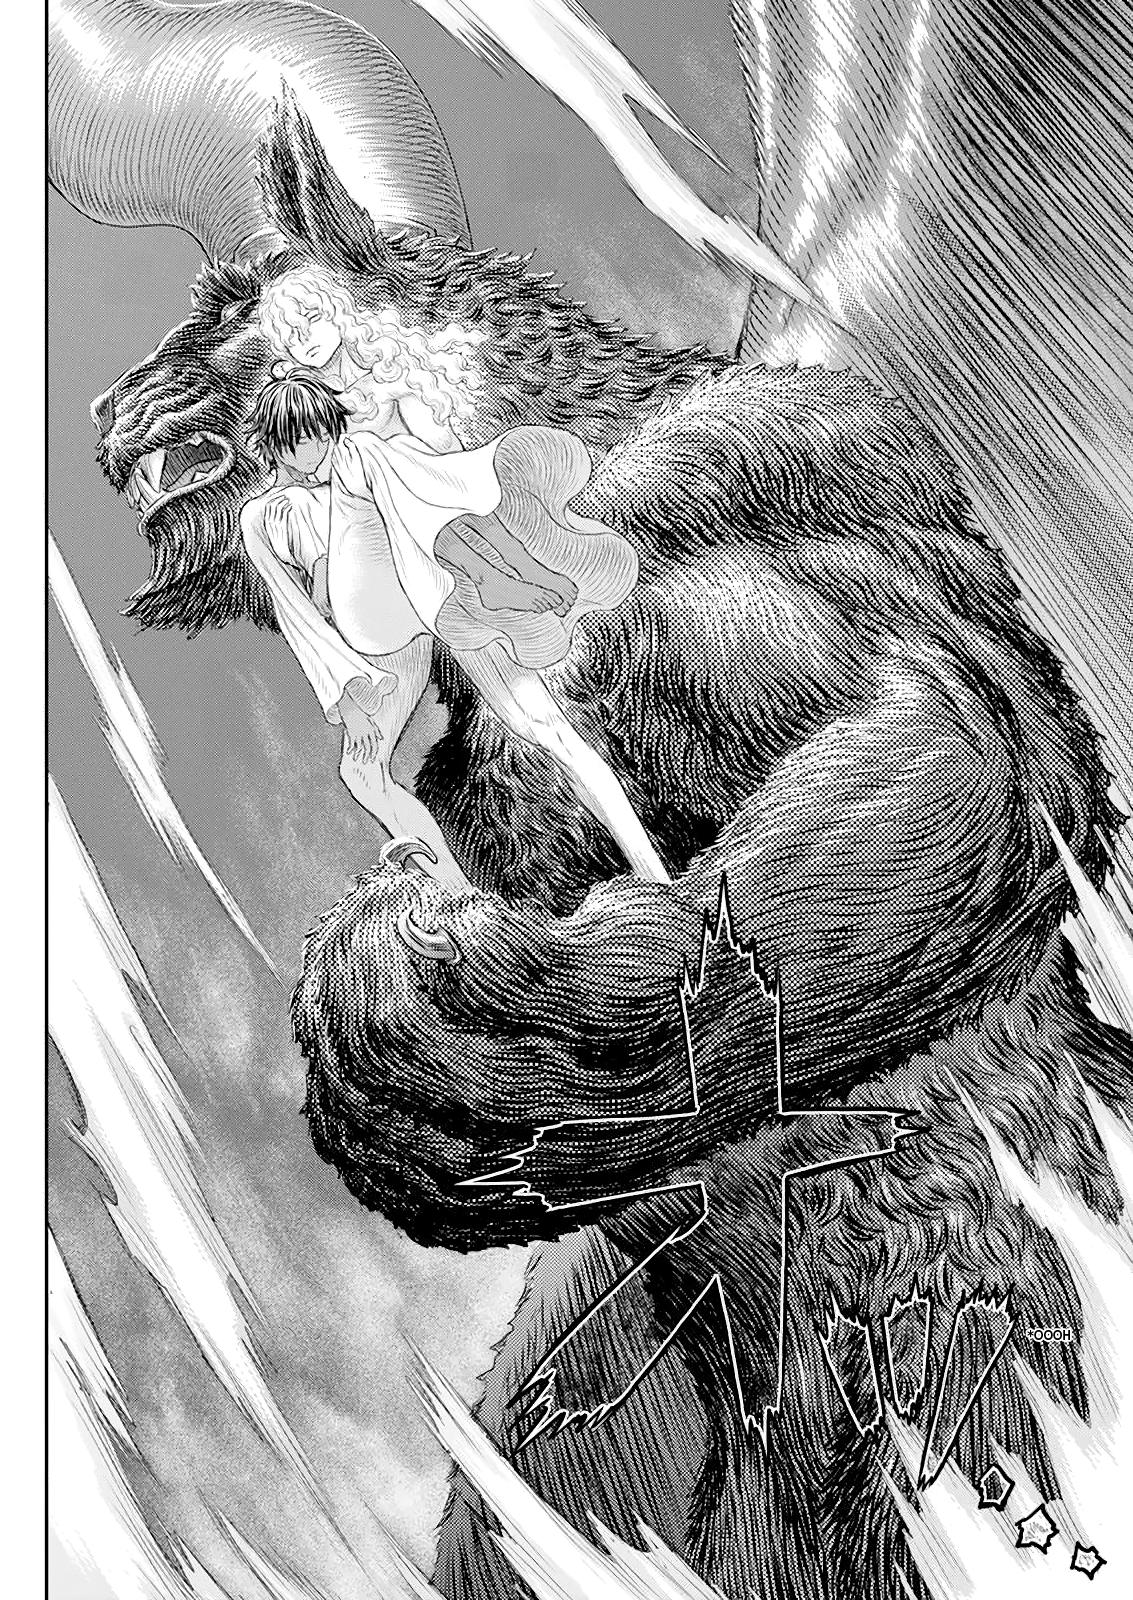 Berserk Manga Chapter 368 image 15